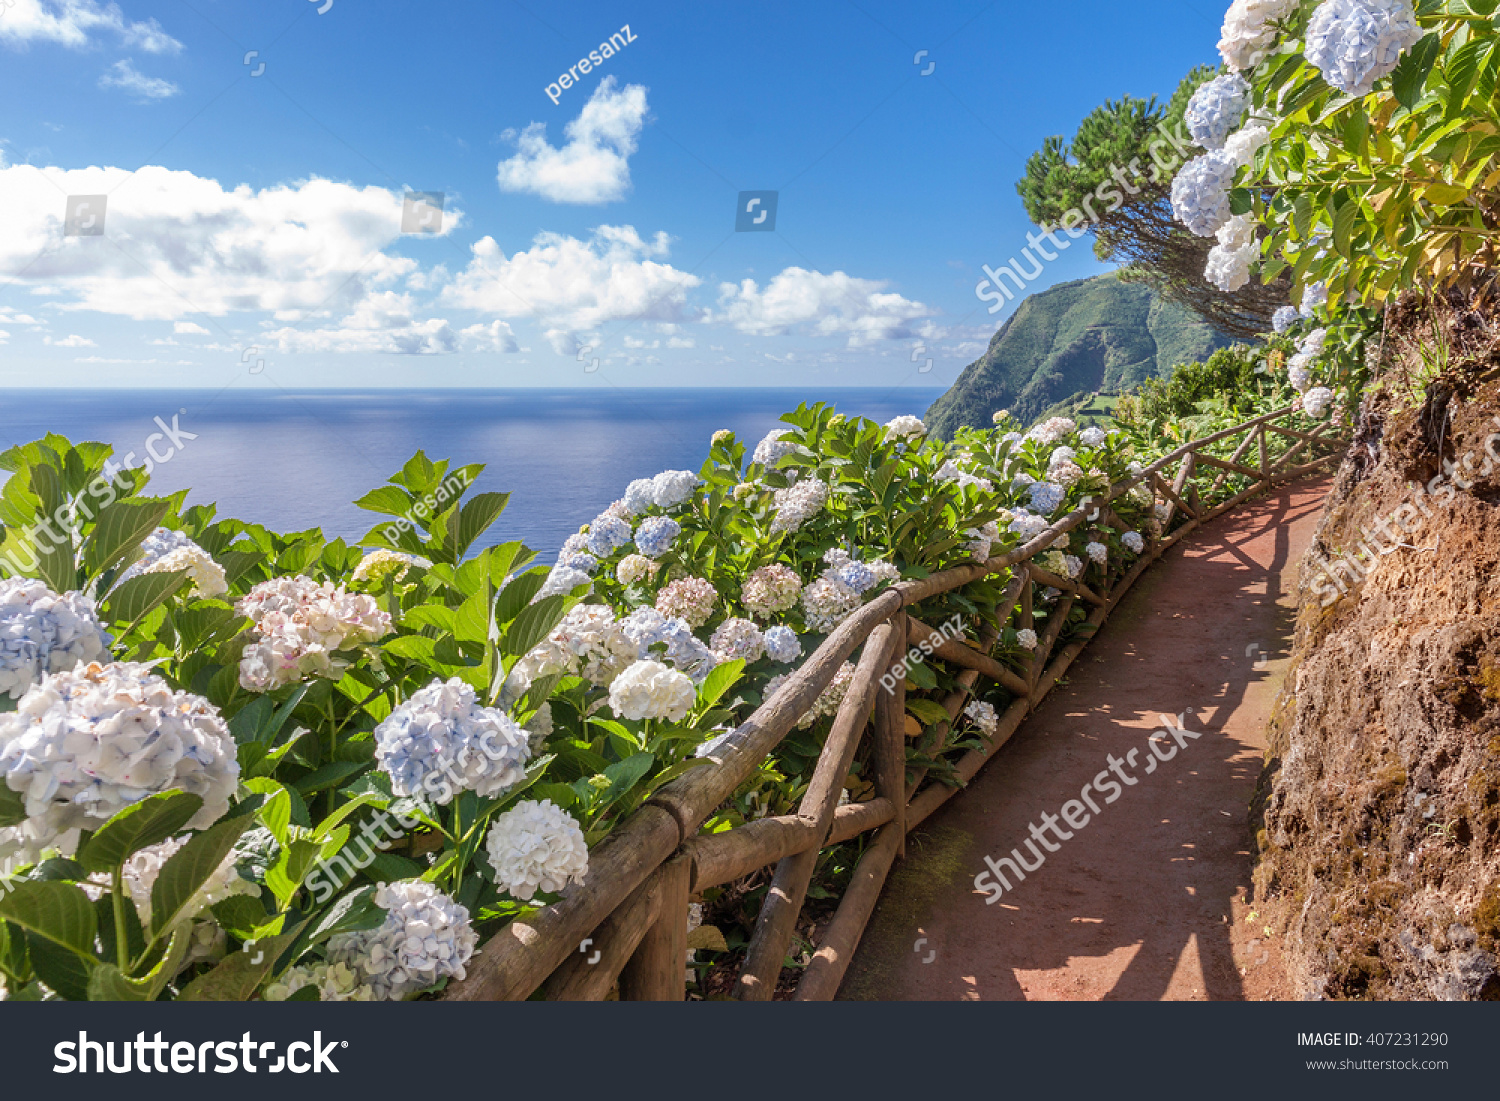 Coastal path with hydrangea in Sao Miguel, Azores Islands #407231290